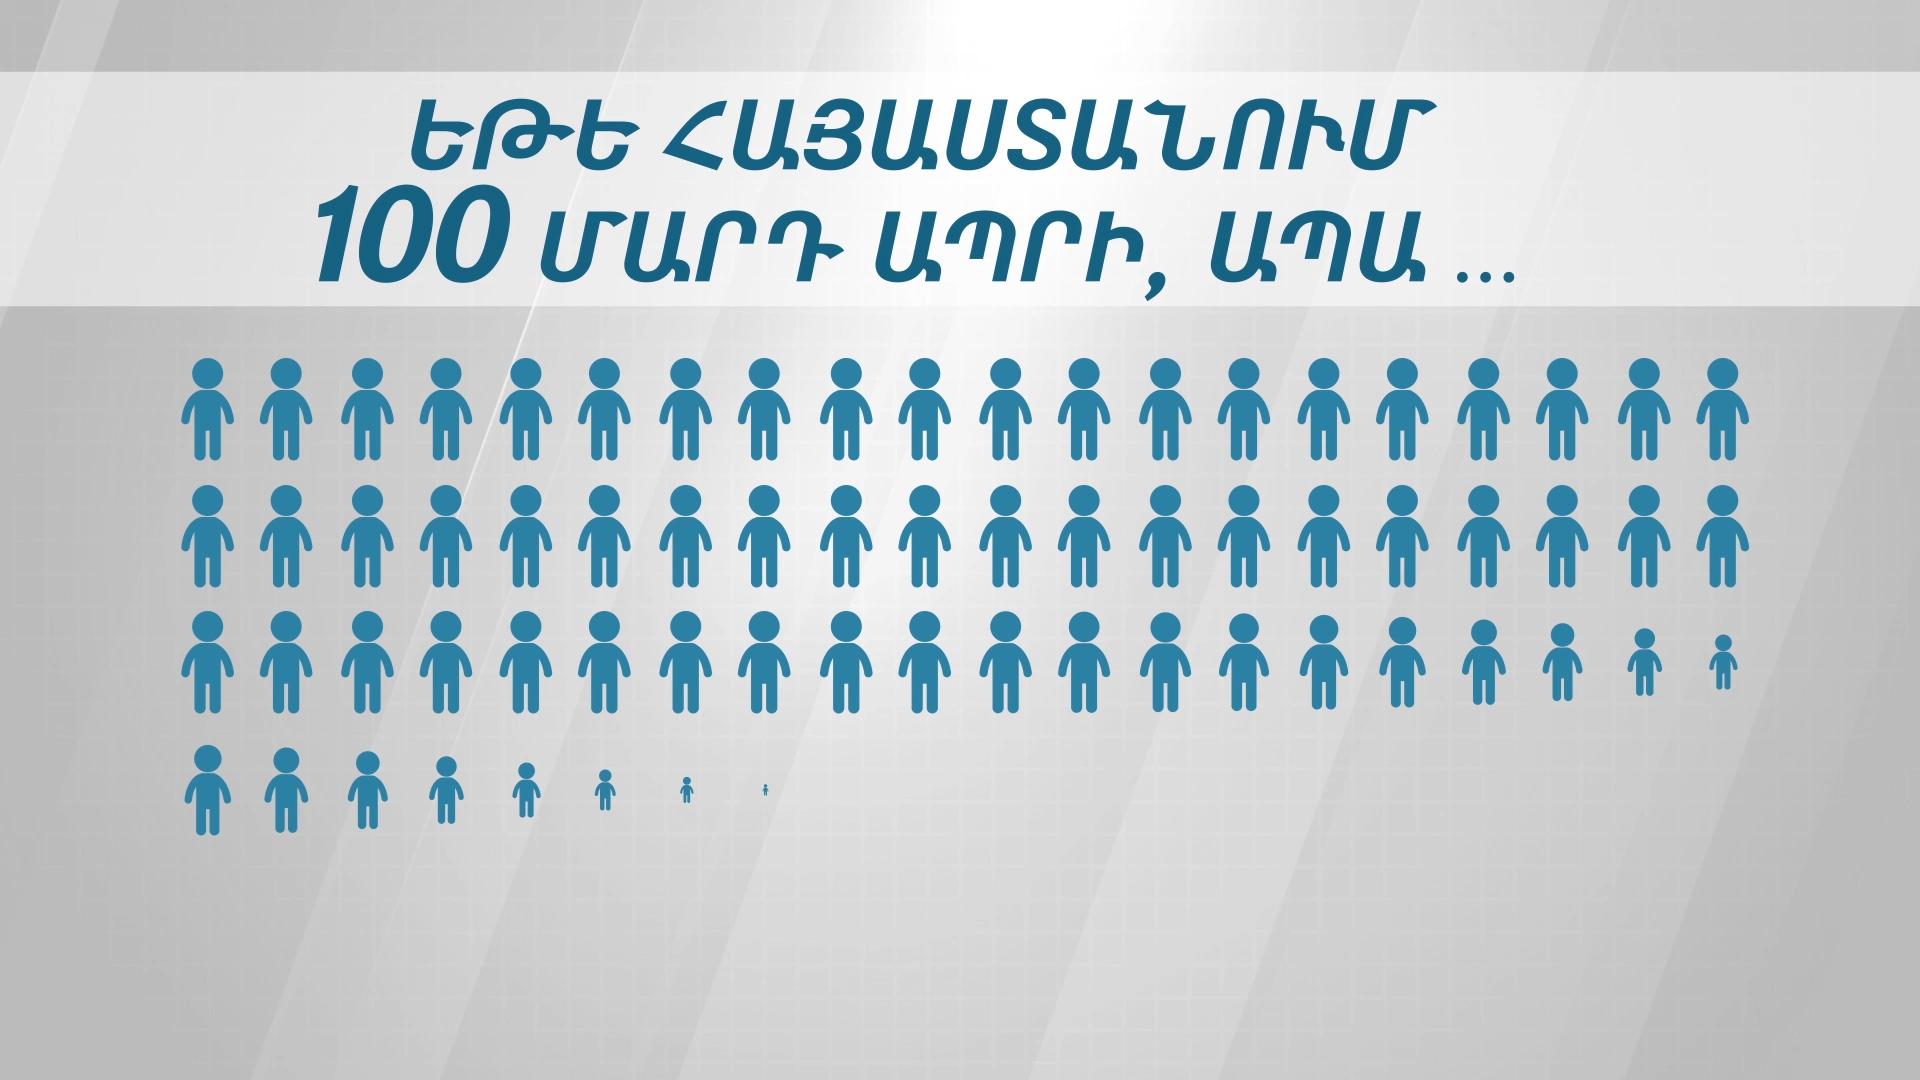 Եթե Հայաստանում 100 մարդ ապրի